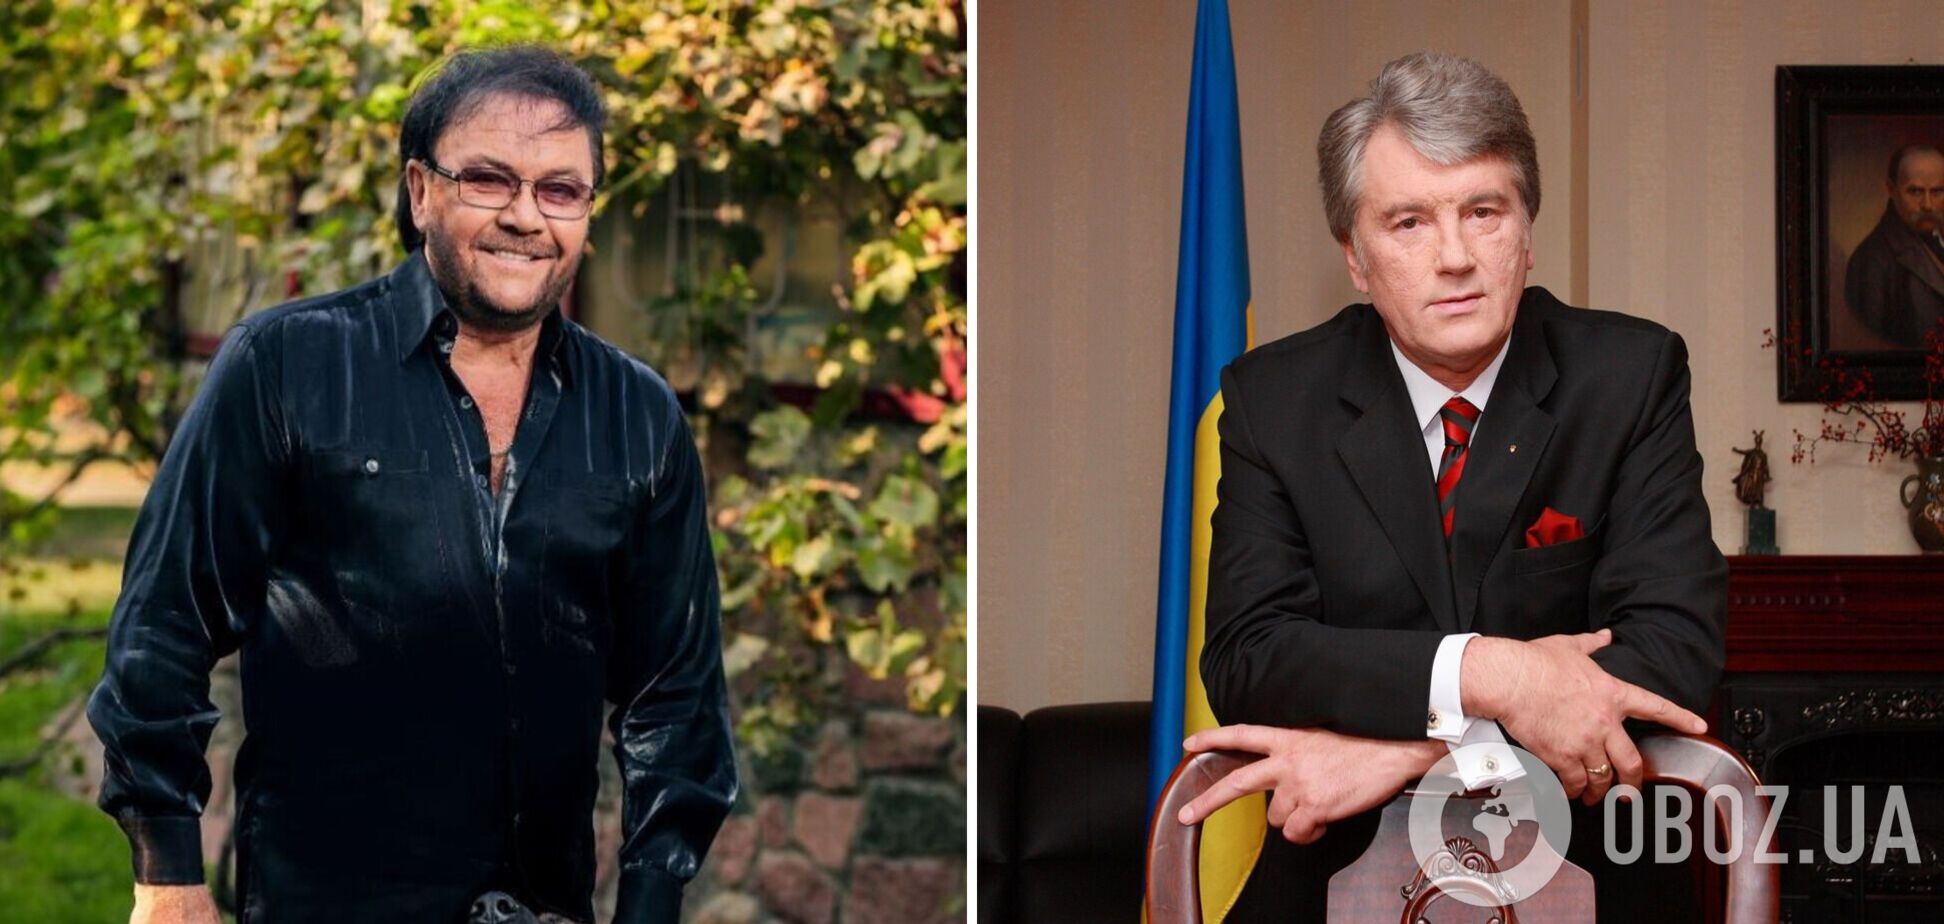 Дружина покійного Віталія Білоножка пригадала, як той бився з Віктором Ющенком: були ножові поранення